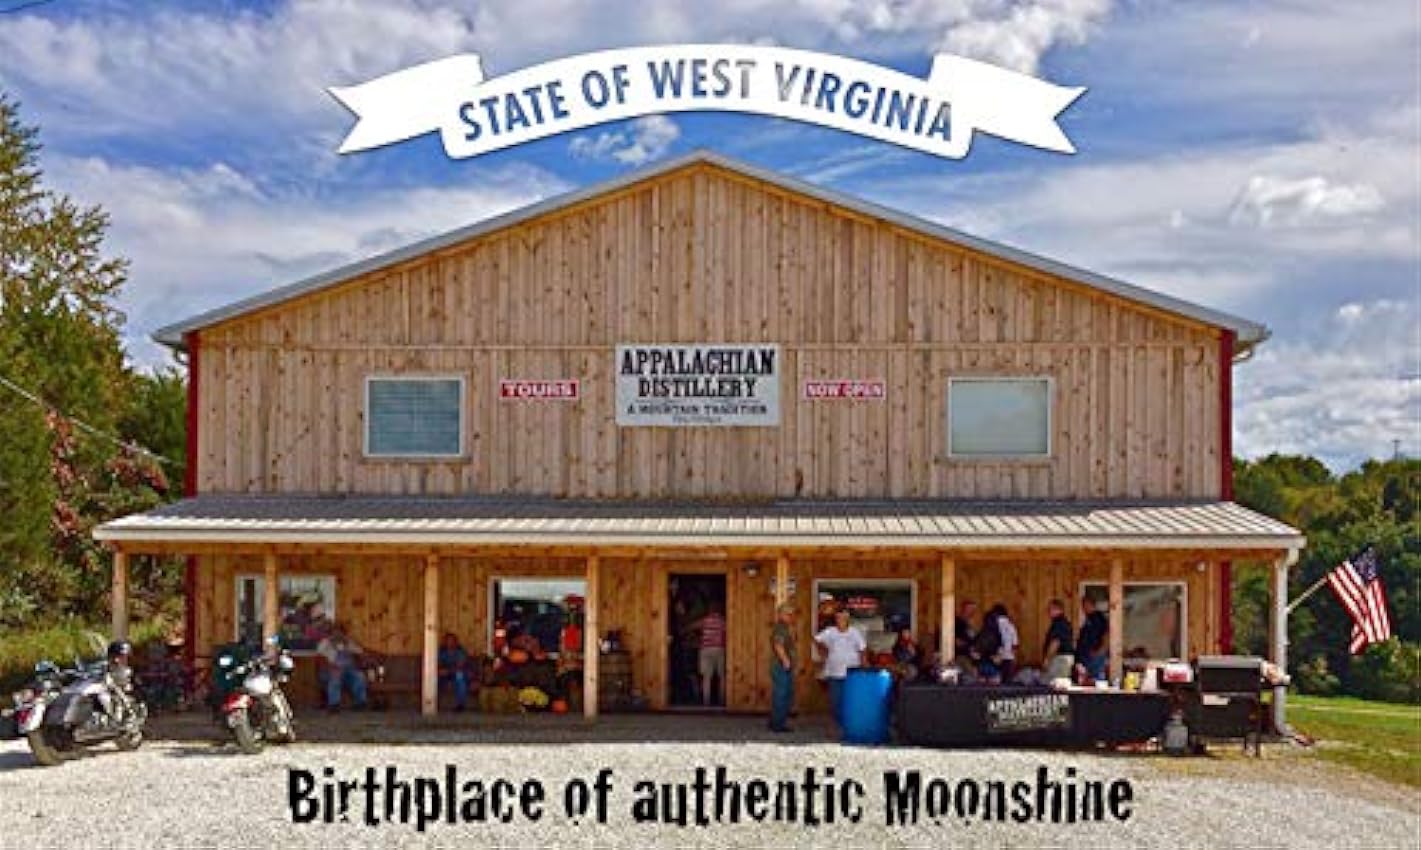 Preiswerte Appalachian Moonshine - Straight. 45% Vol. - Echter handgefertigter Moonshine Whiskey aus West Virginia, USA. 1g38Hrjm am besten verkaufen